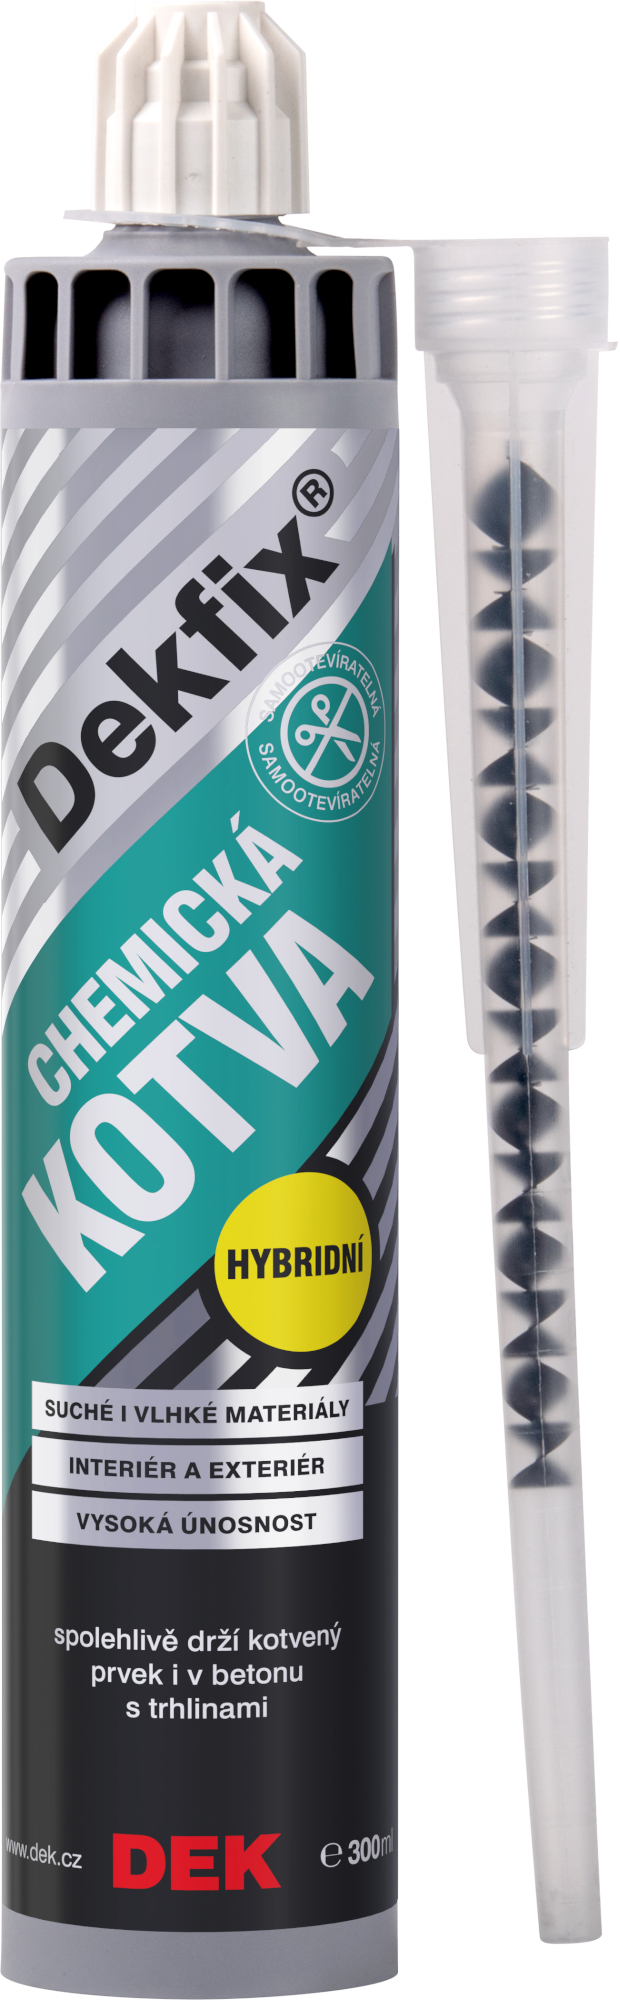 Kotva chemická hybridní DEK DEKFIX , 300 ml